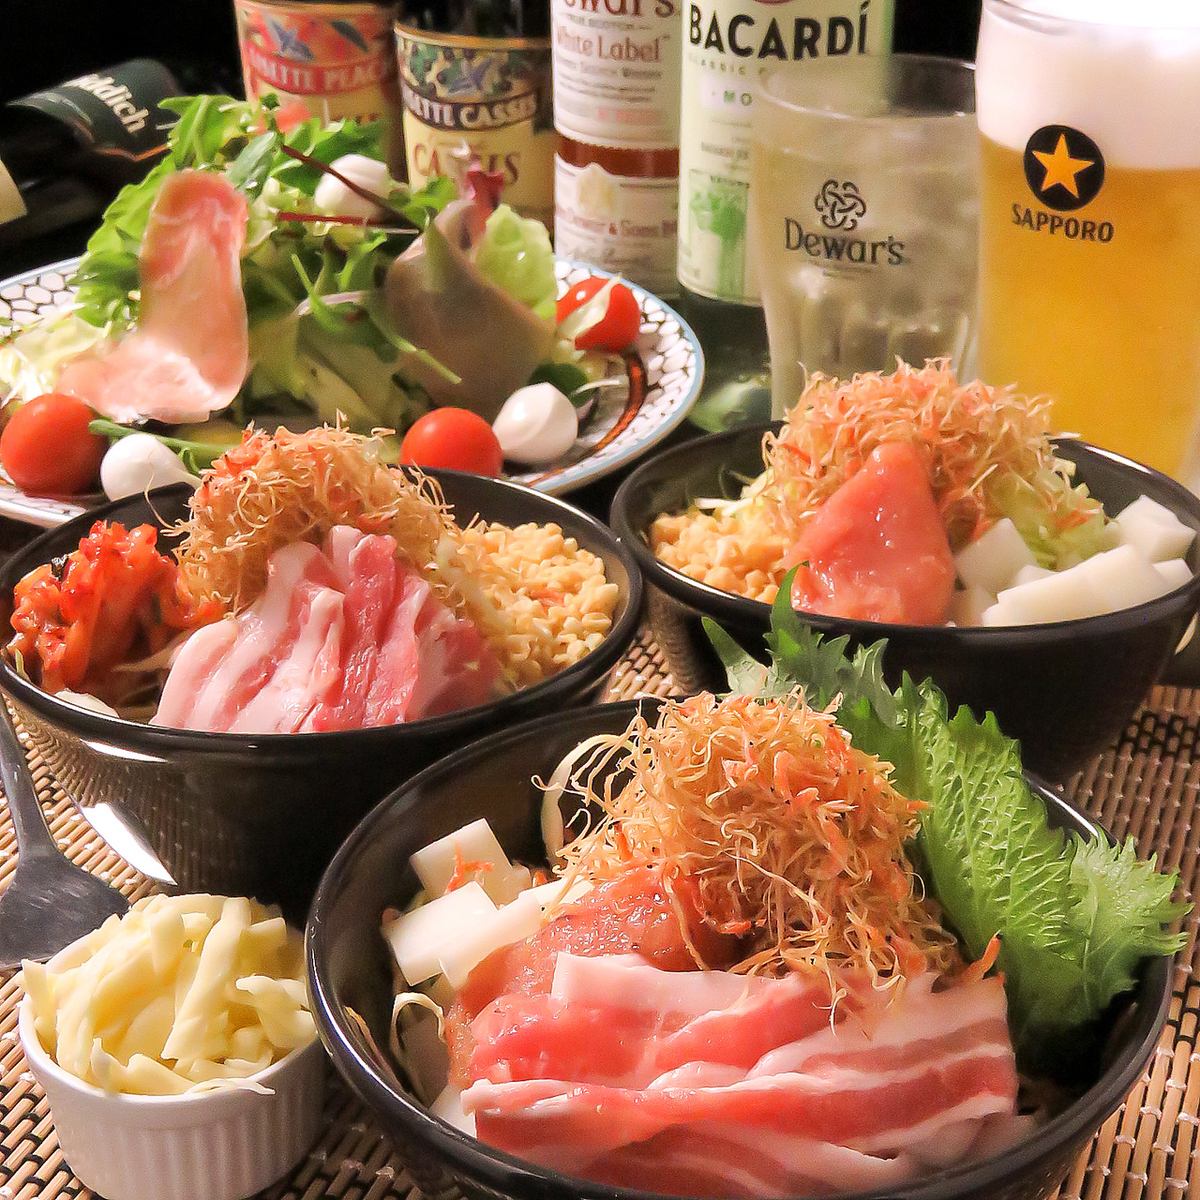 눈앞의 철판으로 맛있는 오코노미 야키와 철판 구이 요리를 즐기세요!